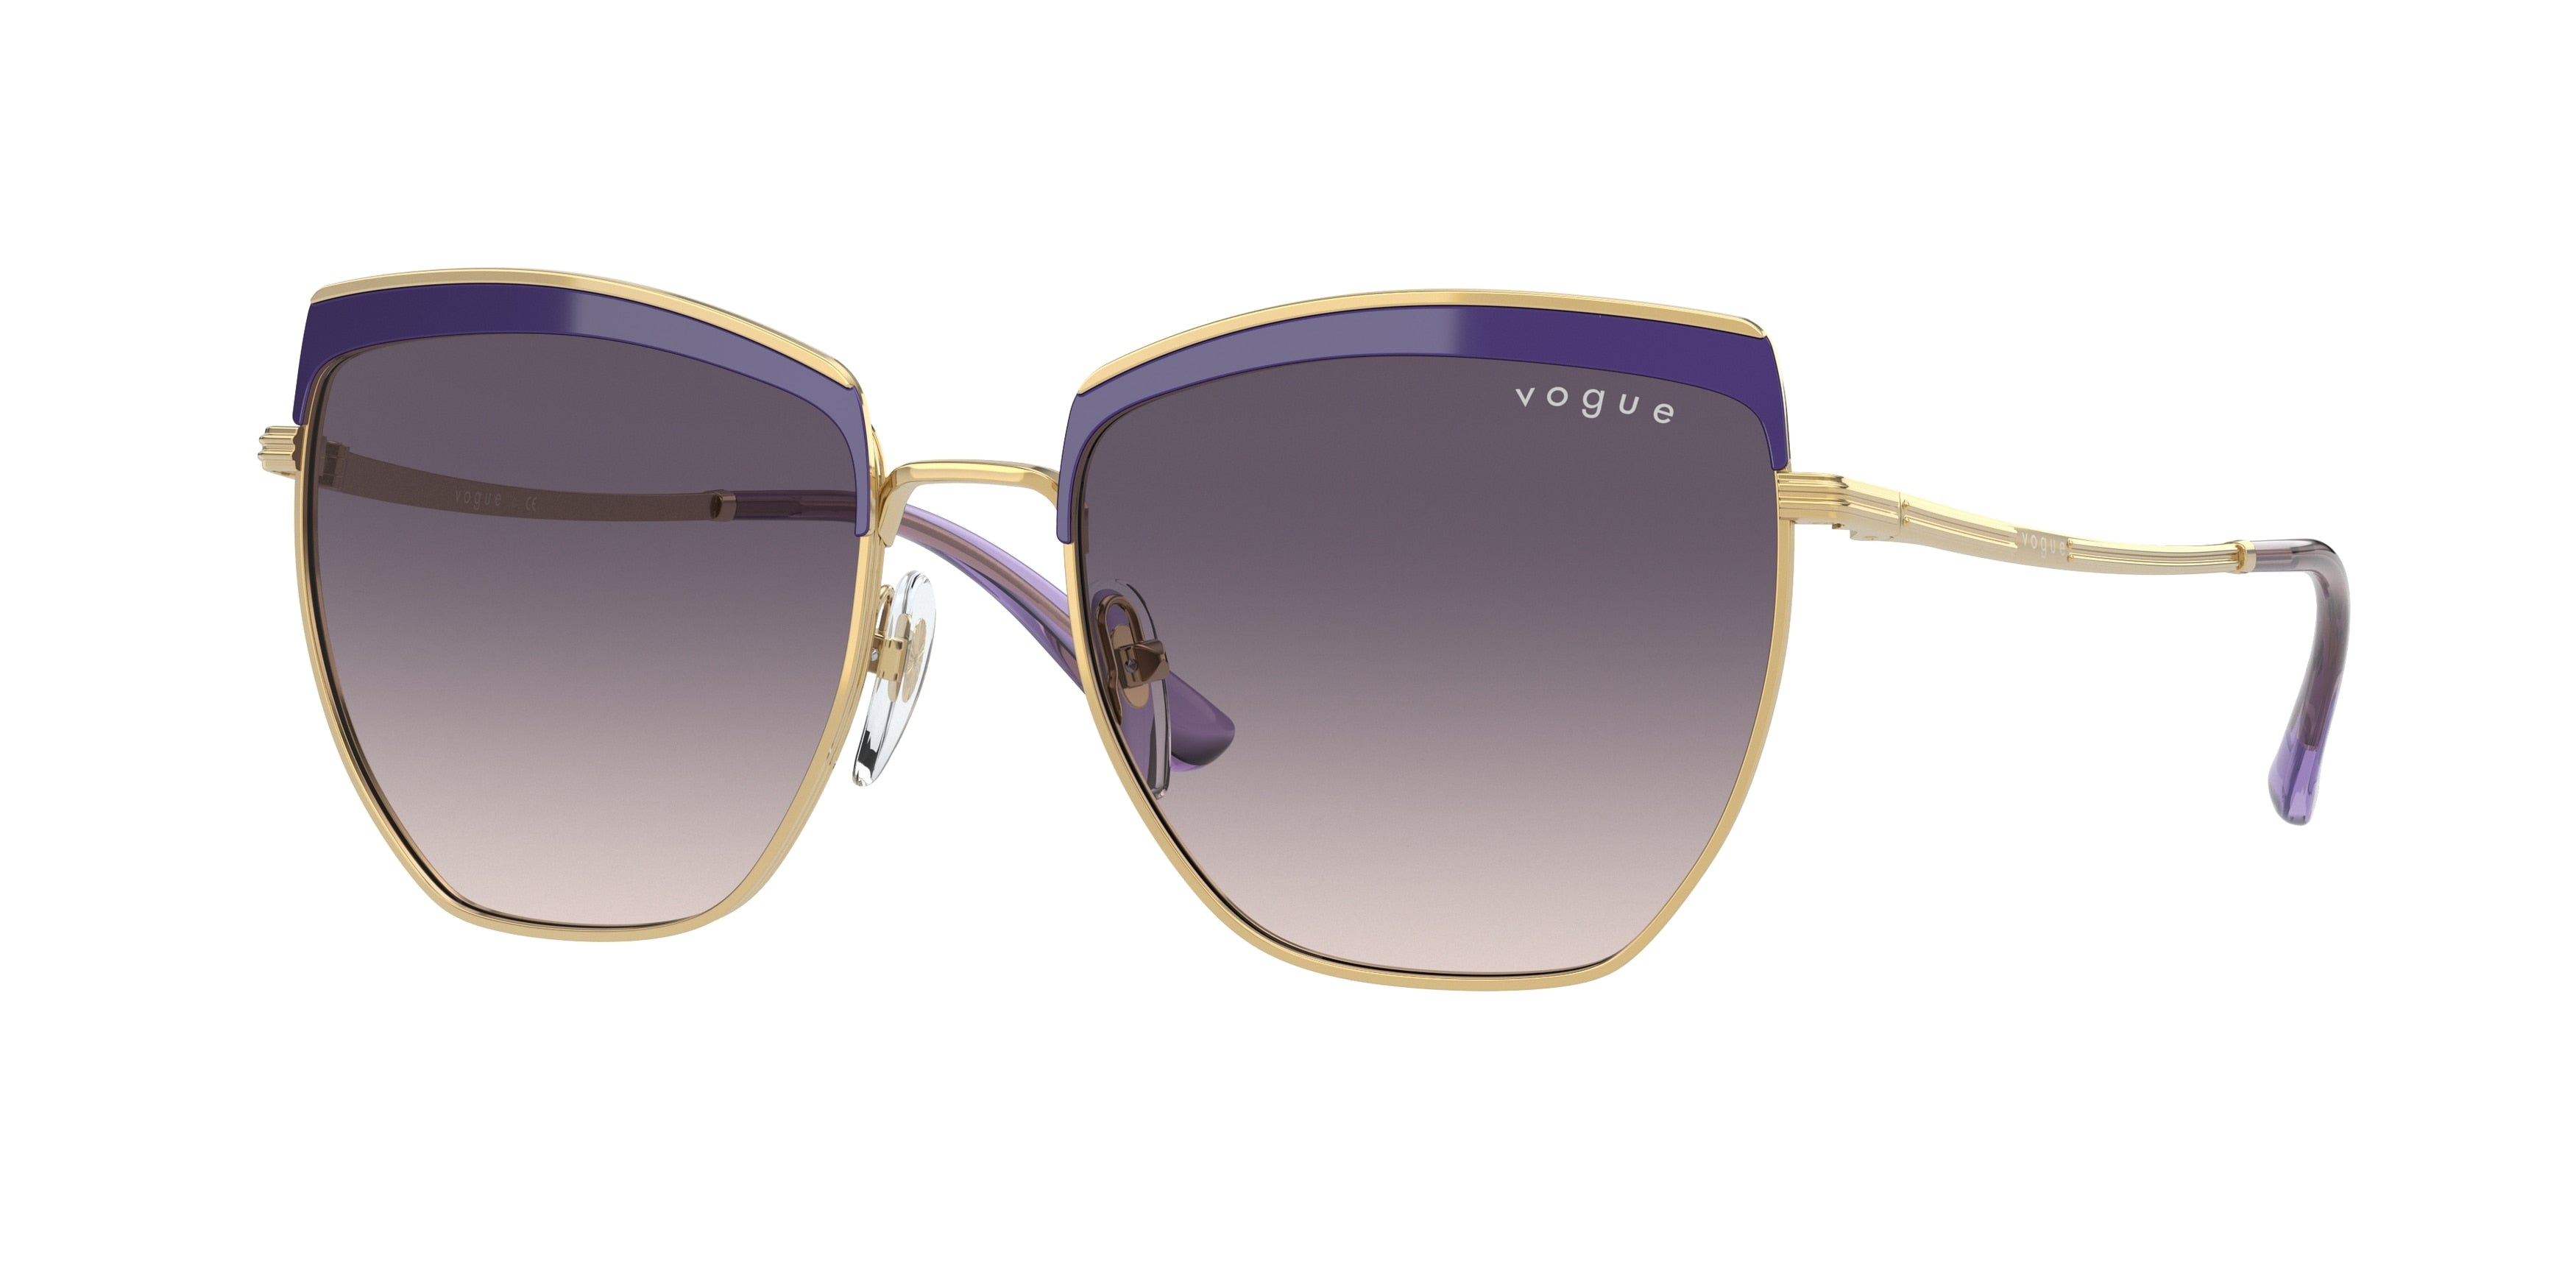 Vogue VO4234S Irregular Sunglasses  516636-Top Violet/Gold 54-140-17 - Color Map Violet